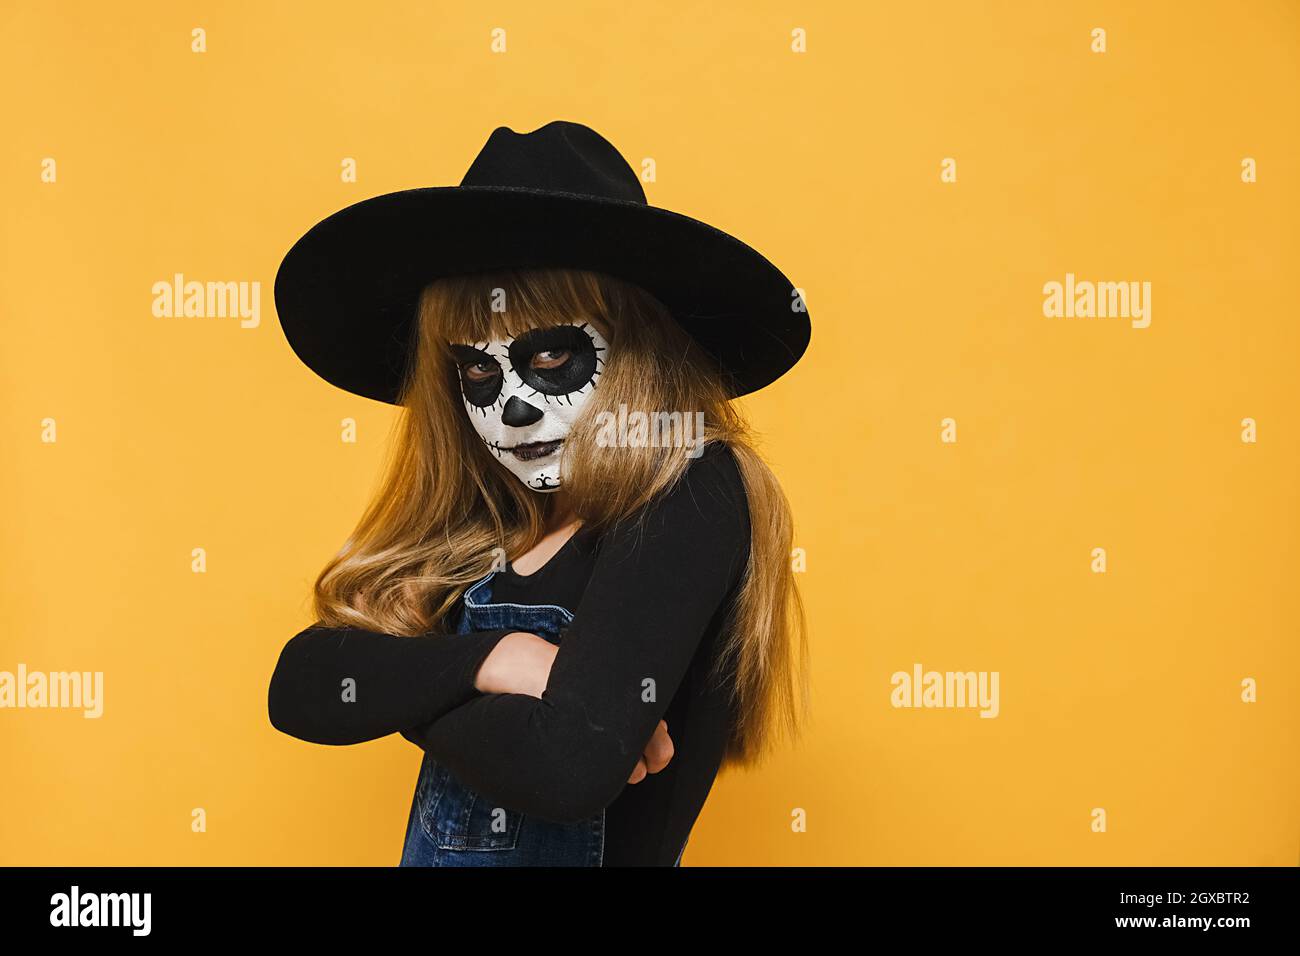 Porträt von wütend traurig kleinen blonden Mädchen Kind mit Halloween Make-up-Maske, trägt schwarzen Hut, gekreuzte Arme, unglücklich zur Seite schauen Stockfoto